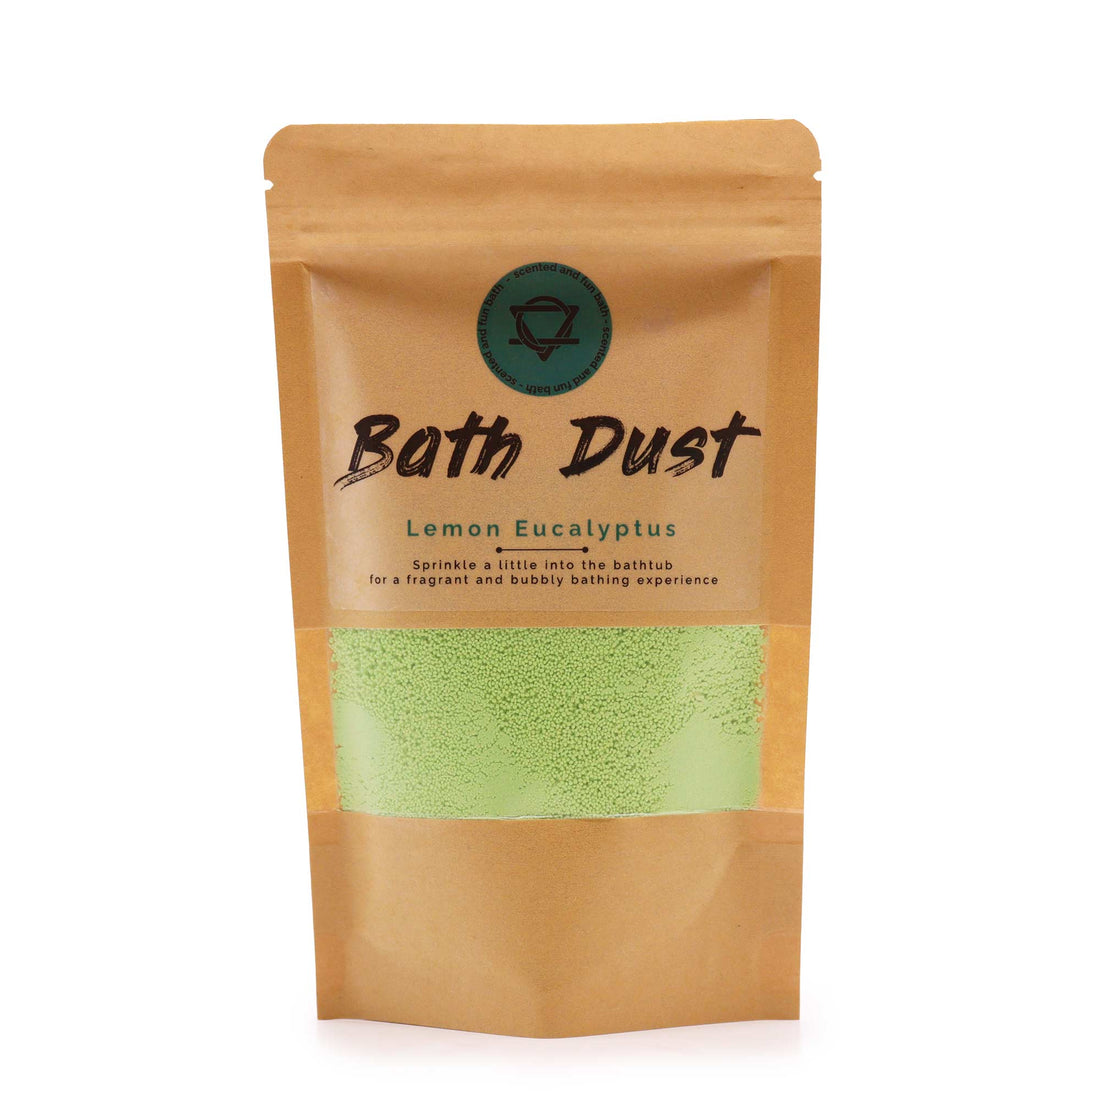 Lemon Eucalyptus Bath Dust